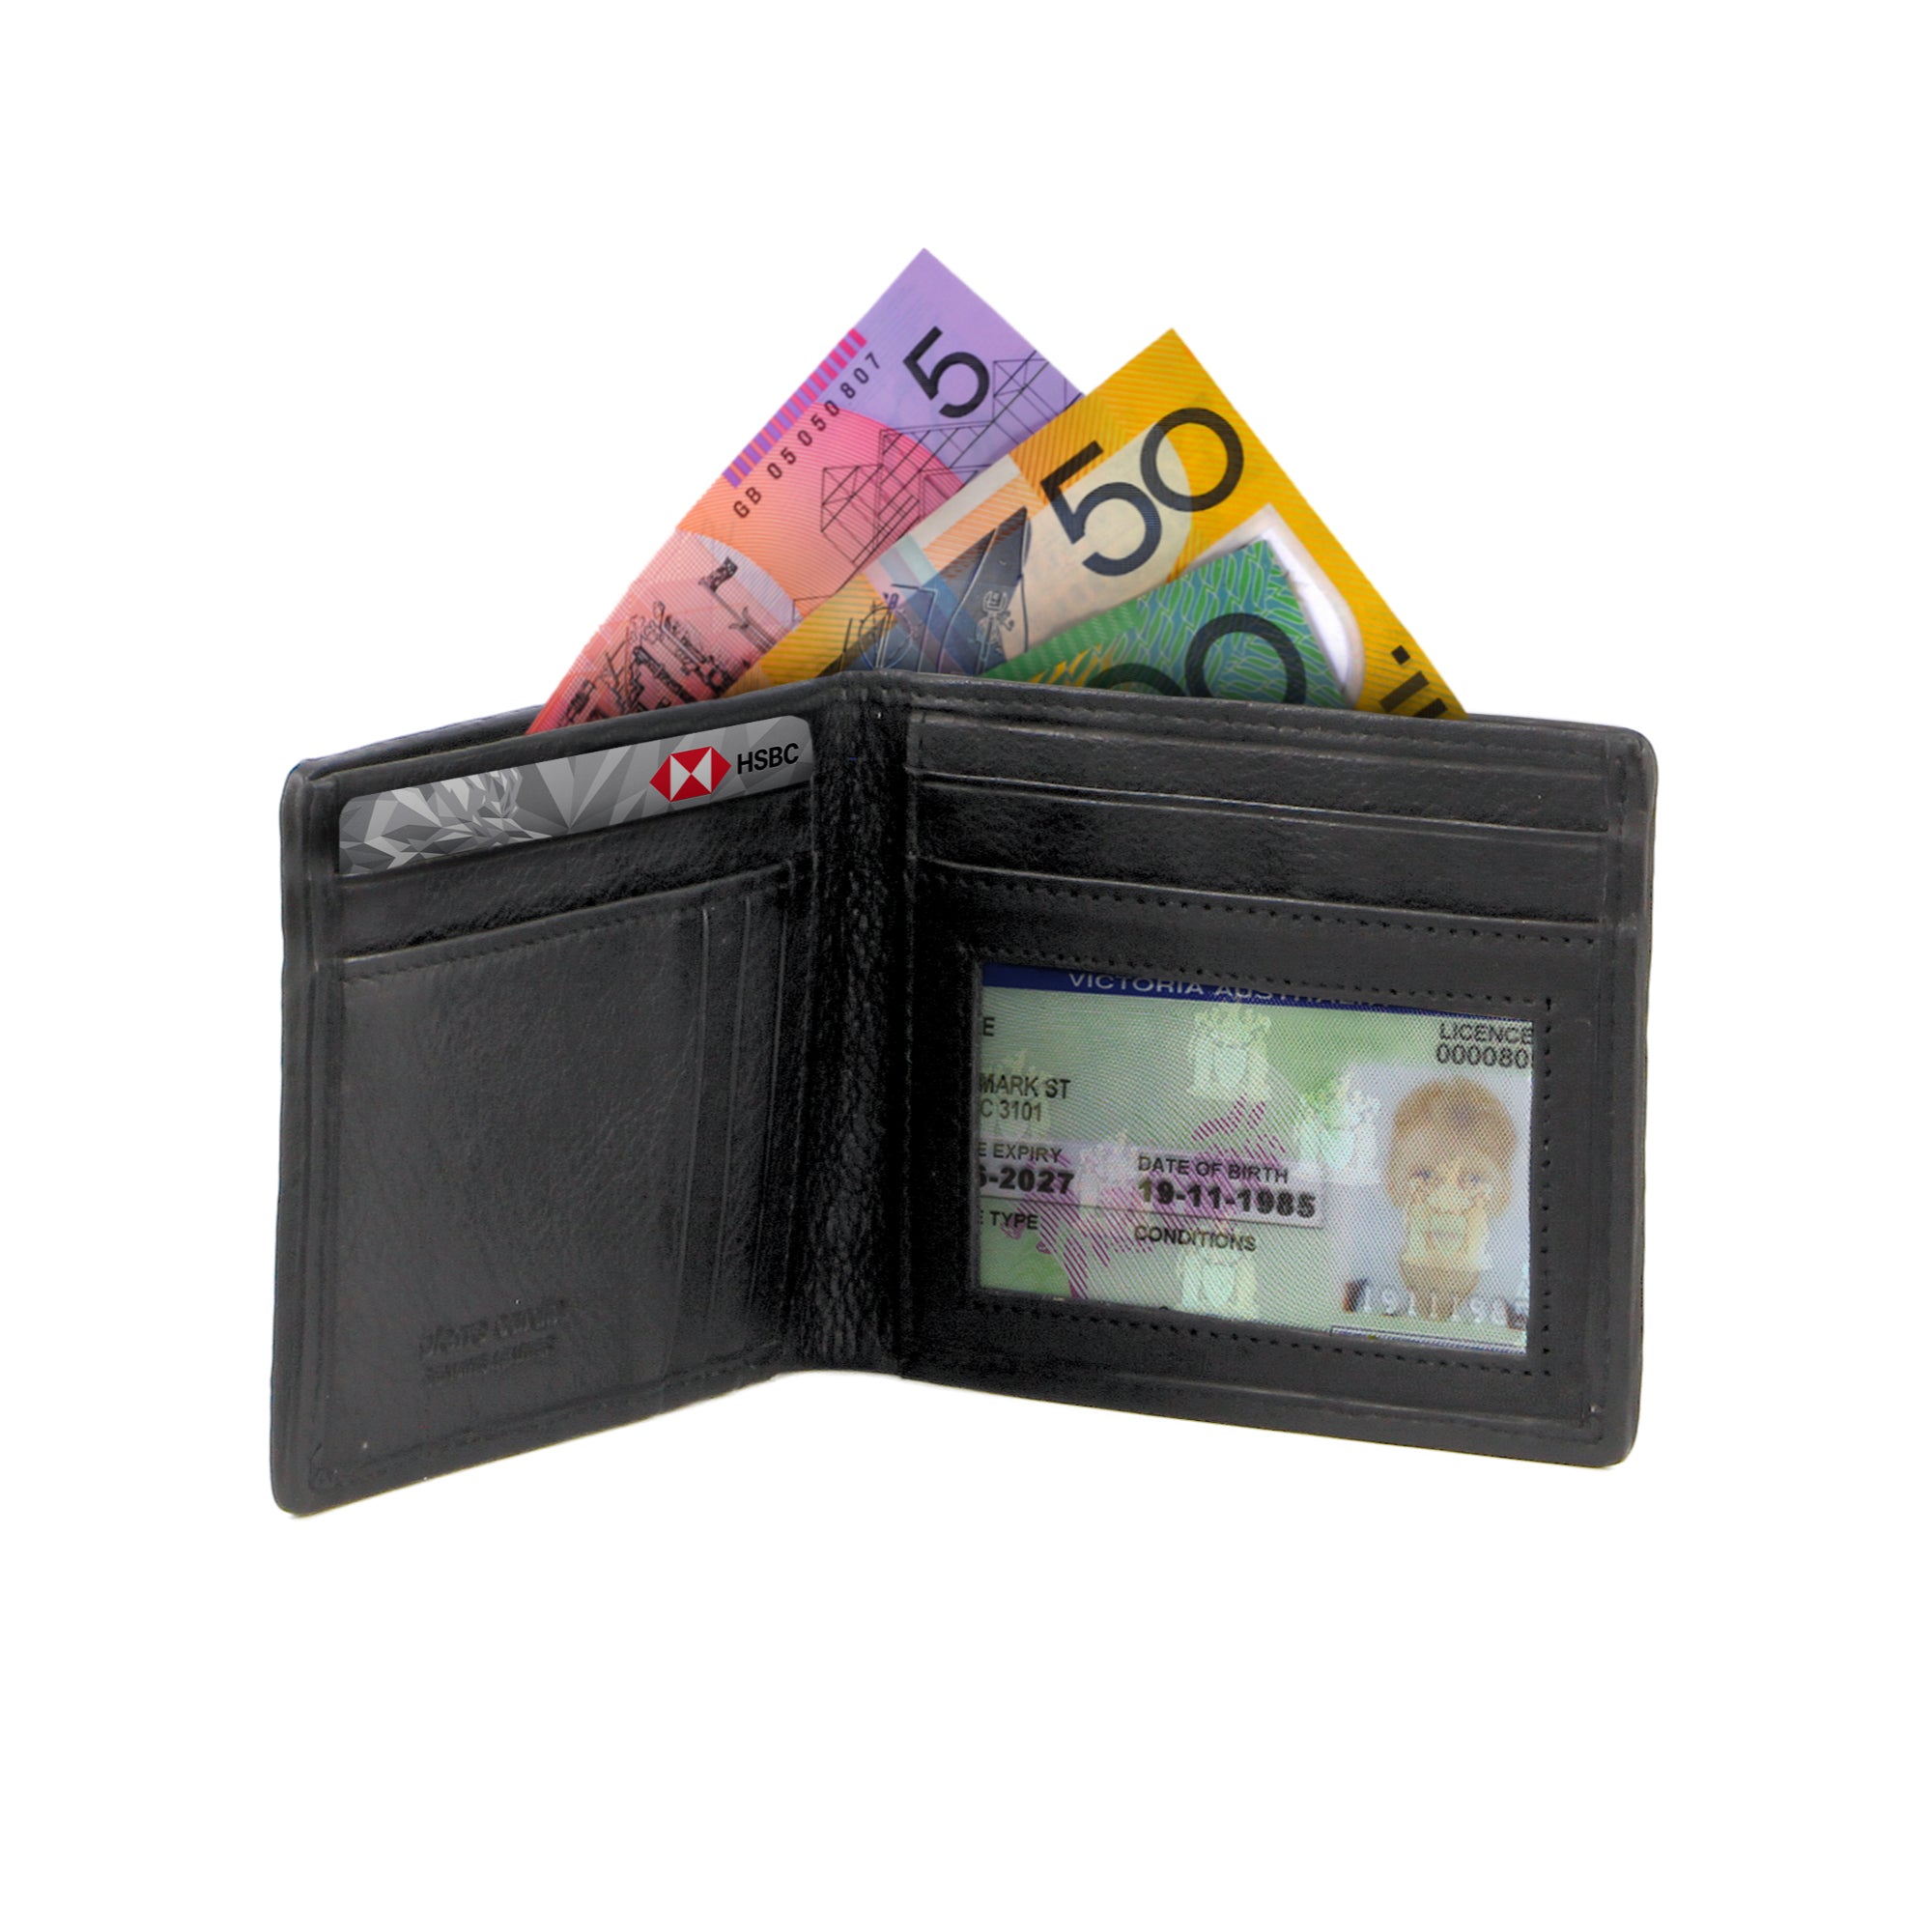 Pierre Cardin Woven Embossed Leather Bi-Fold Wallet in Black